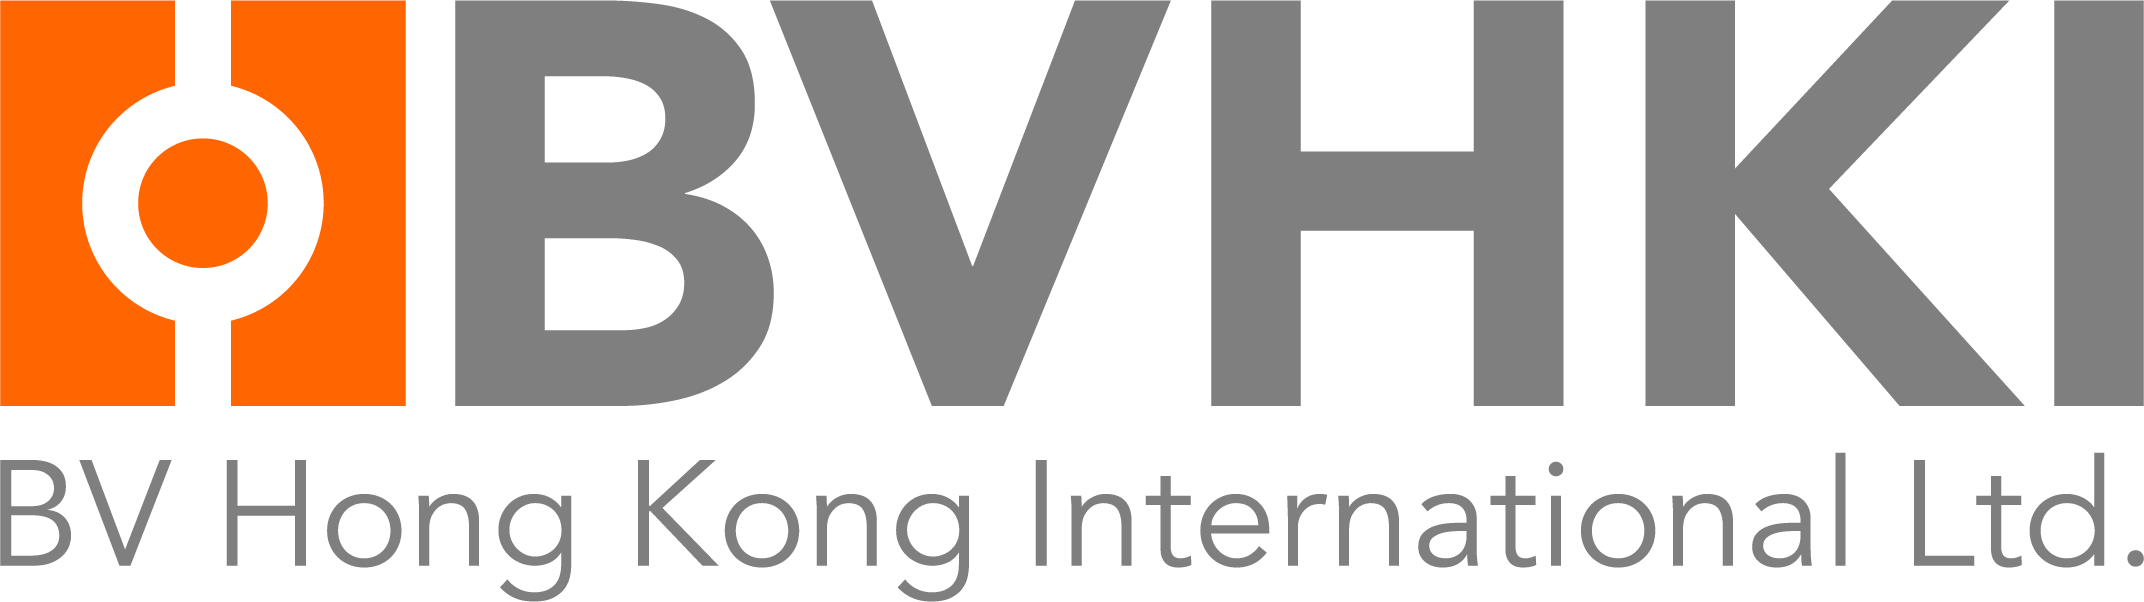 BVHKI International